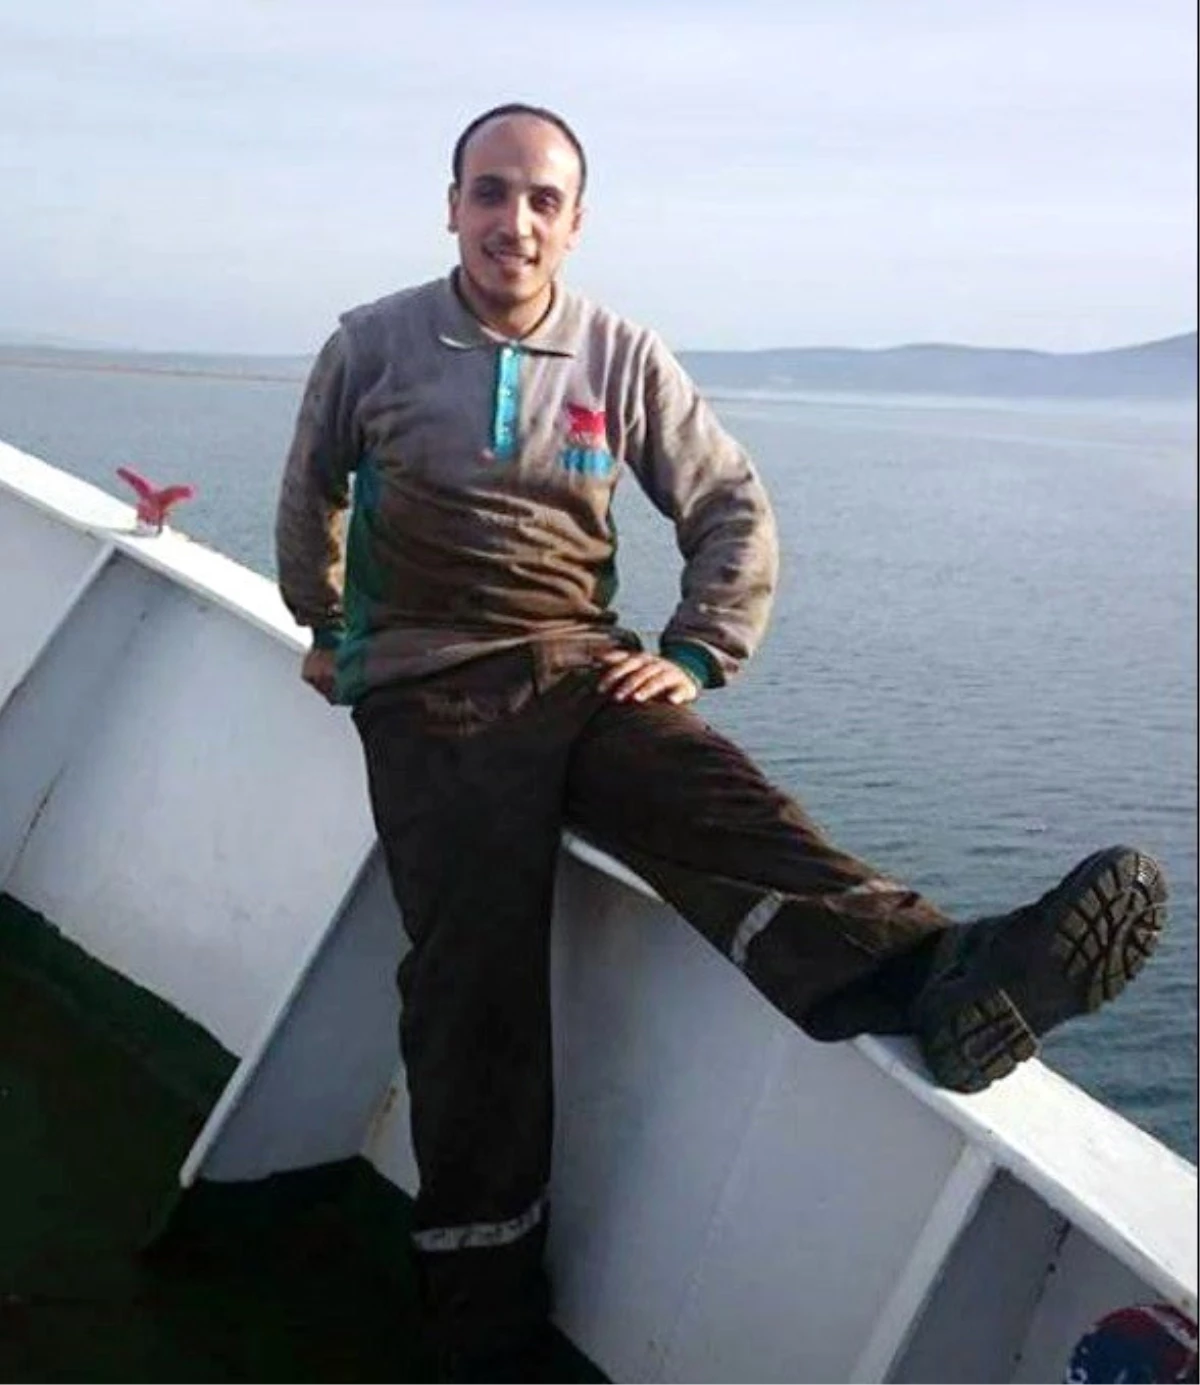 Çalıştığı Gemi ile Yunan Adalarında Kaybolan Oğlundan 13 Aydır Haber Alamıyor